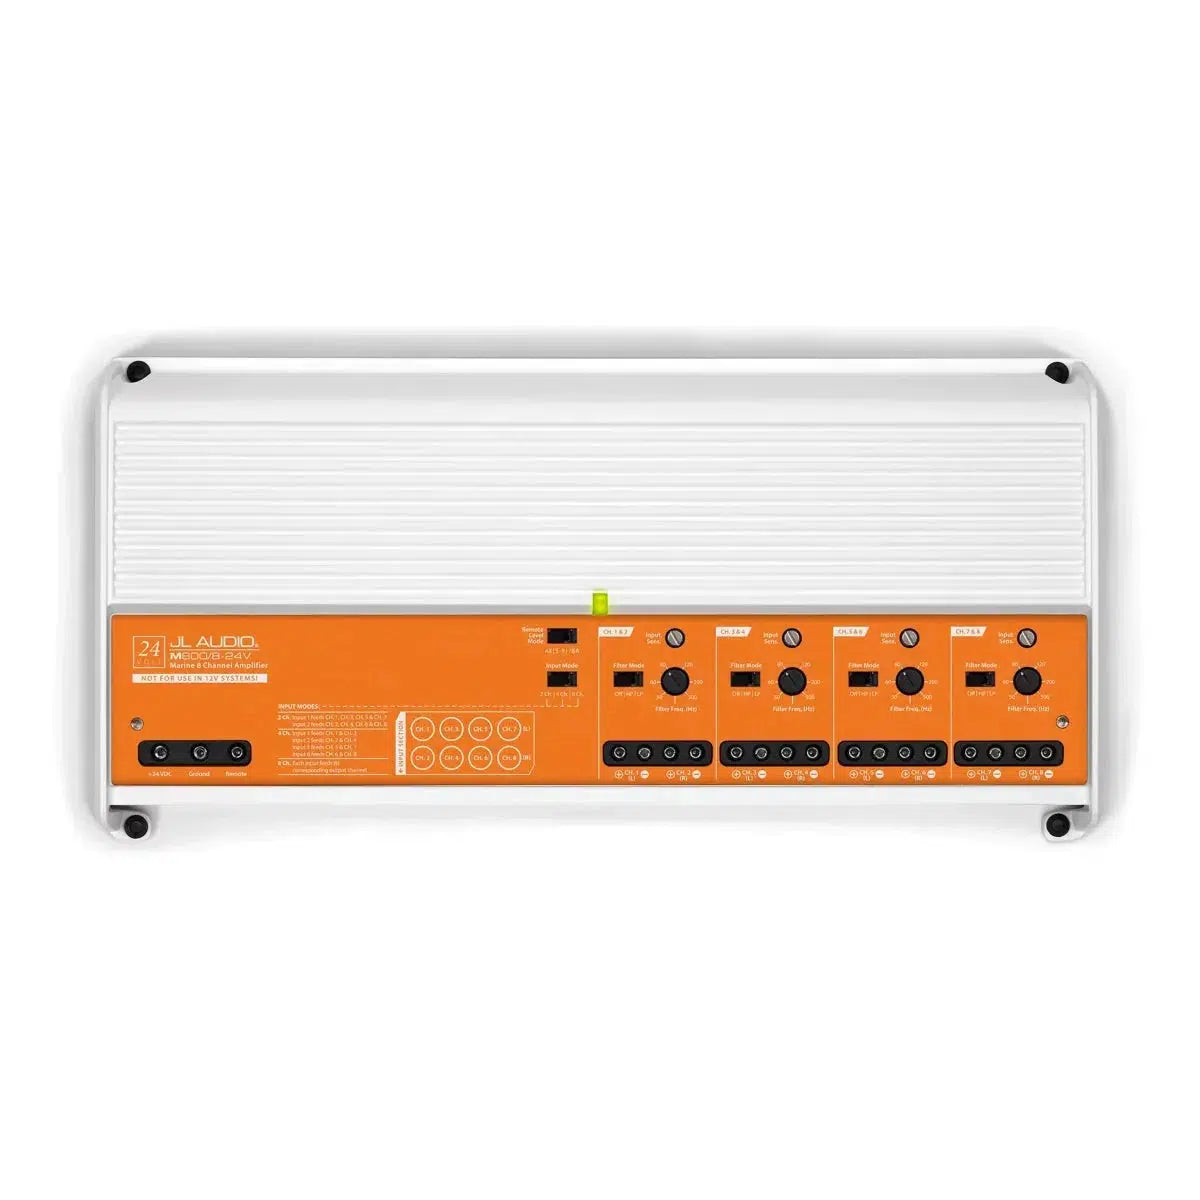 JL Audio-M800/8-24V-8-channel amplifier-Masori.de